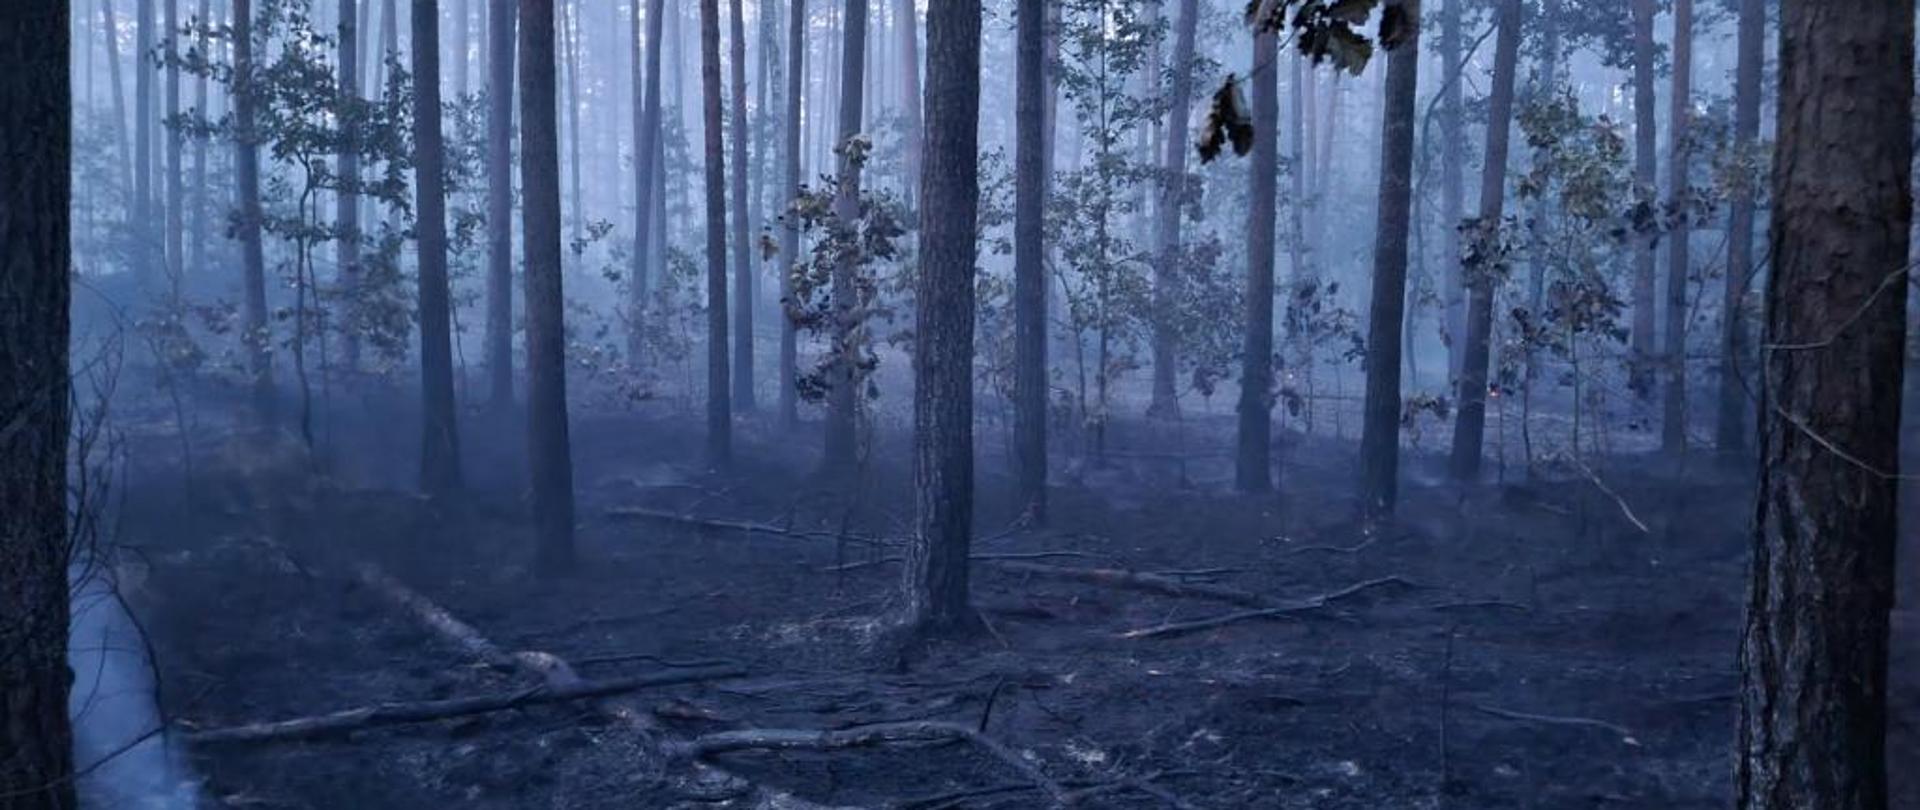 Zdjęcie przedstawia spalony las. Drzewa w kolorze ciemnym, czarnym z opaloną korą, gałęziami oraz bez liści. Nad spaloną ziemią miejscami unosi się jeszcze dym. 